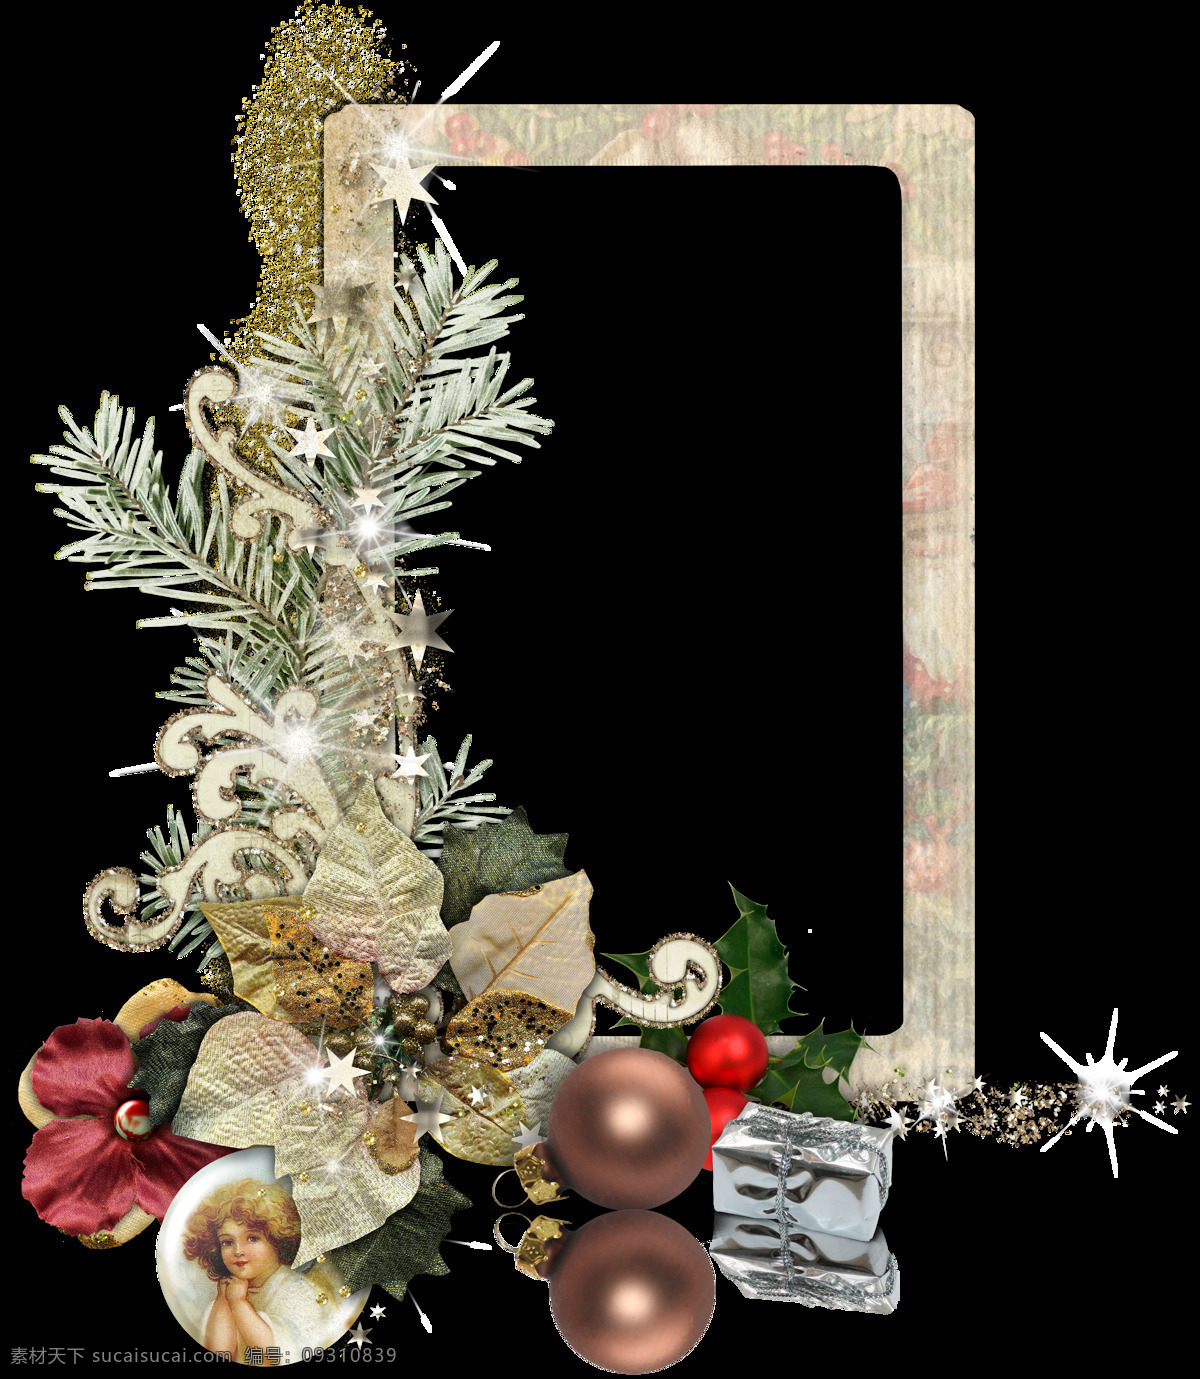 圣诞相框 圣诞 银色 彩球 相框 庆祝 节日 叶子 方框 雪花 边框相框 底纹边框